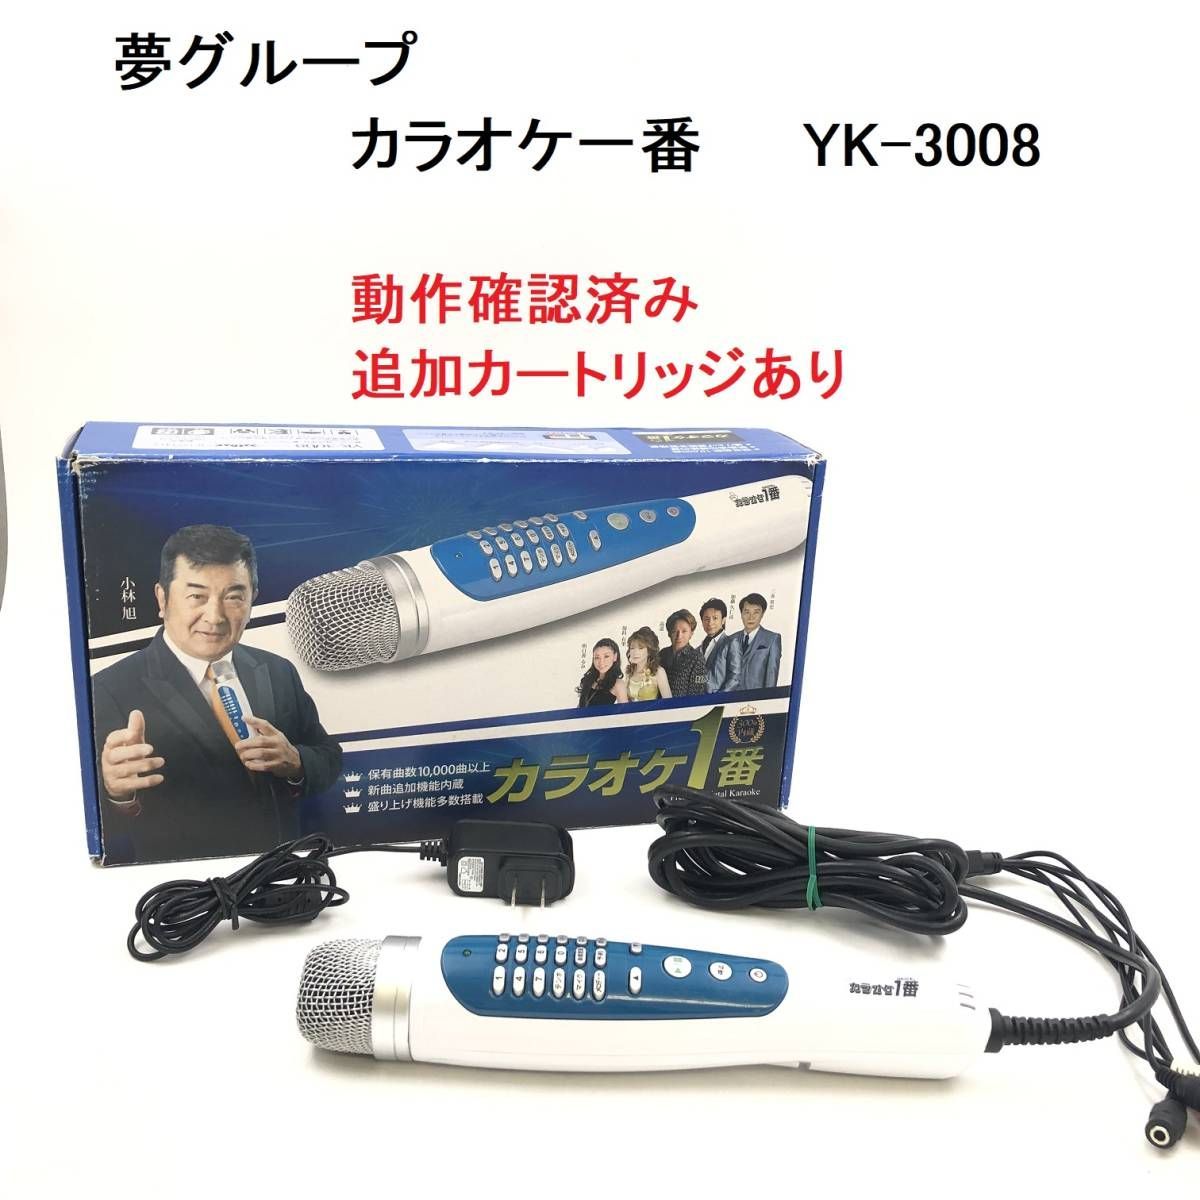 ☆夢グループのカラオケ1番YK-3008 - 通販 - pinehotel.info